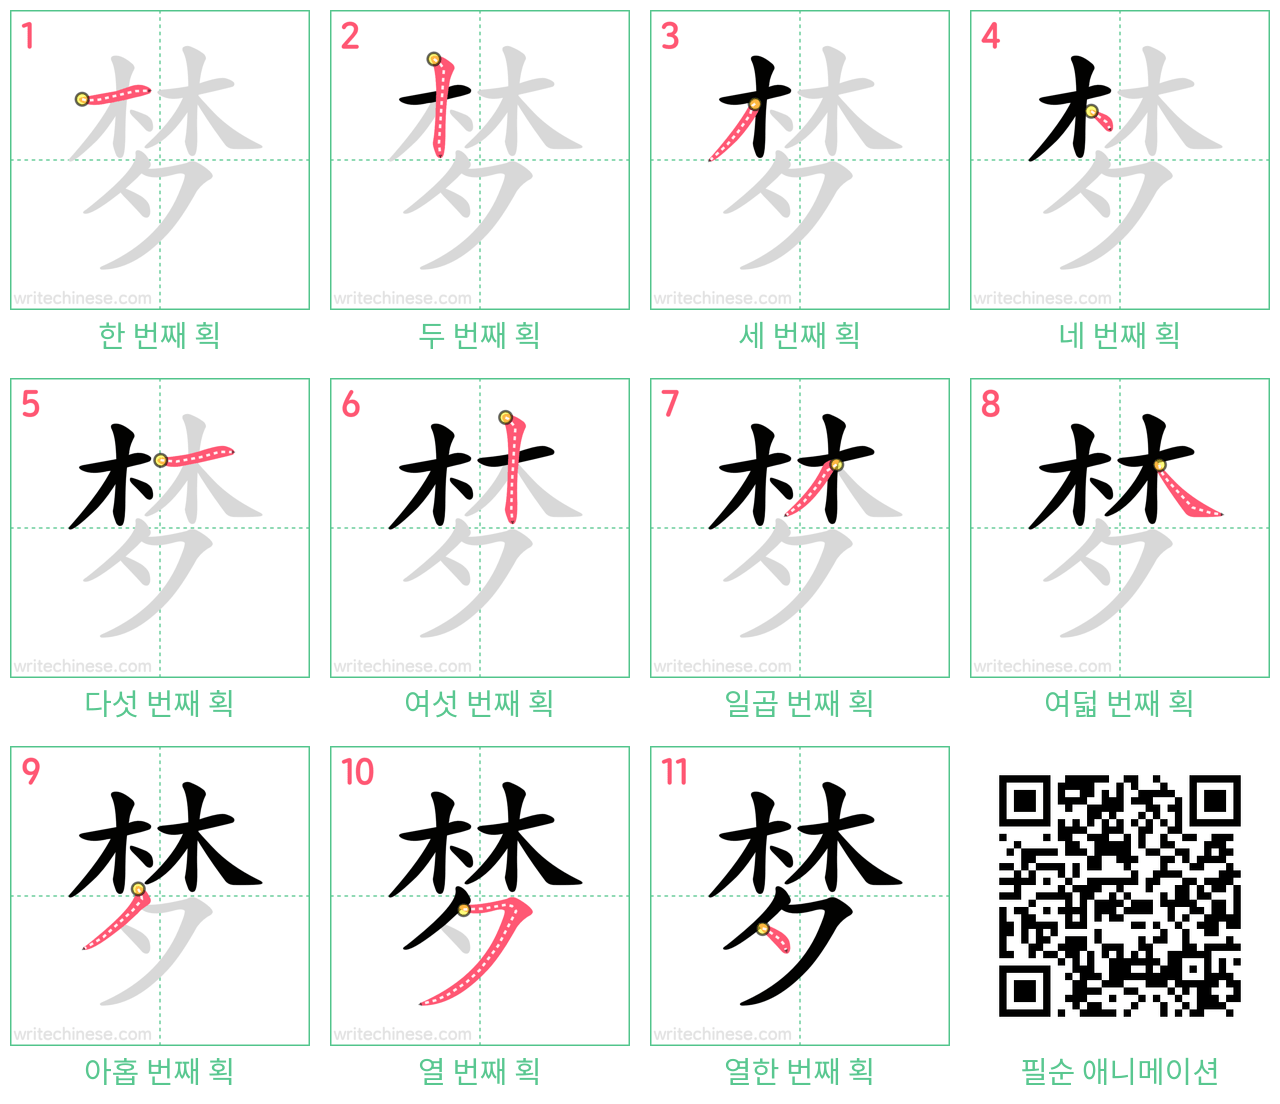 梦 step-by-step stroke order diagrams